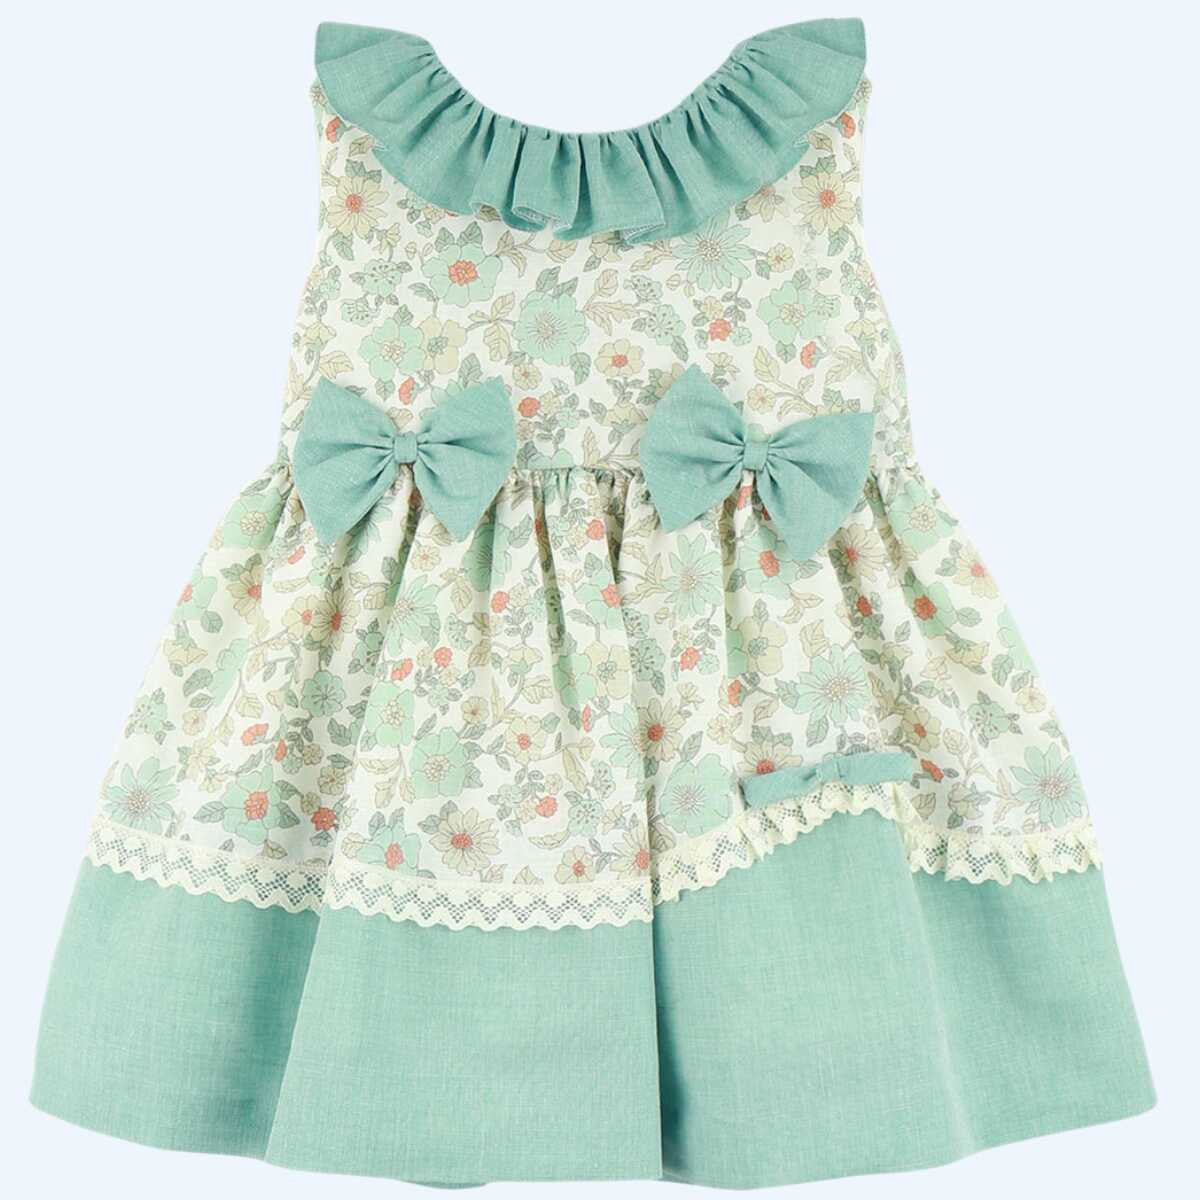 Teal floral dress (older girls 2-12y)